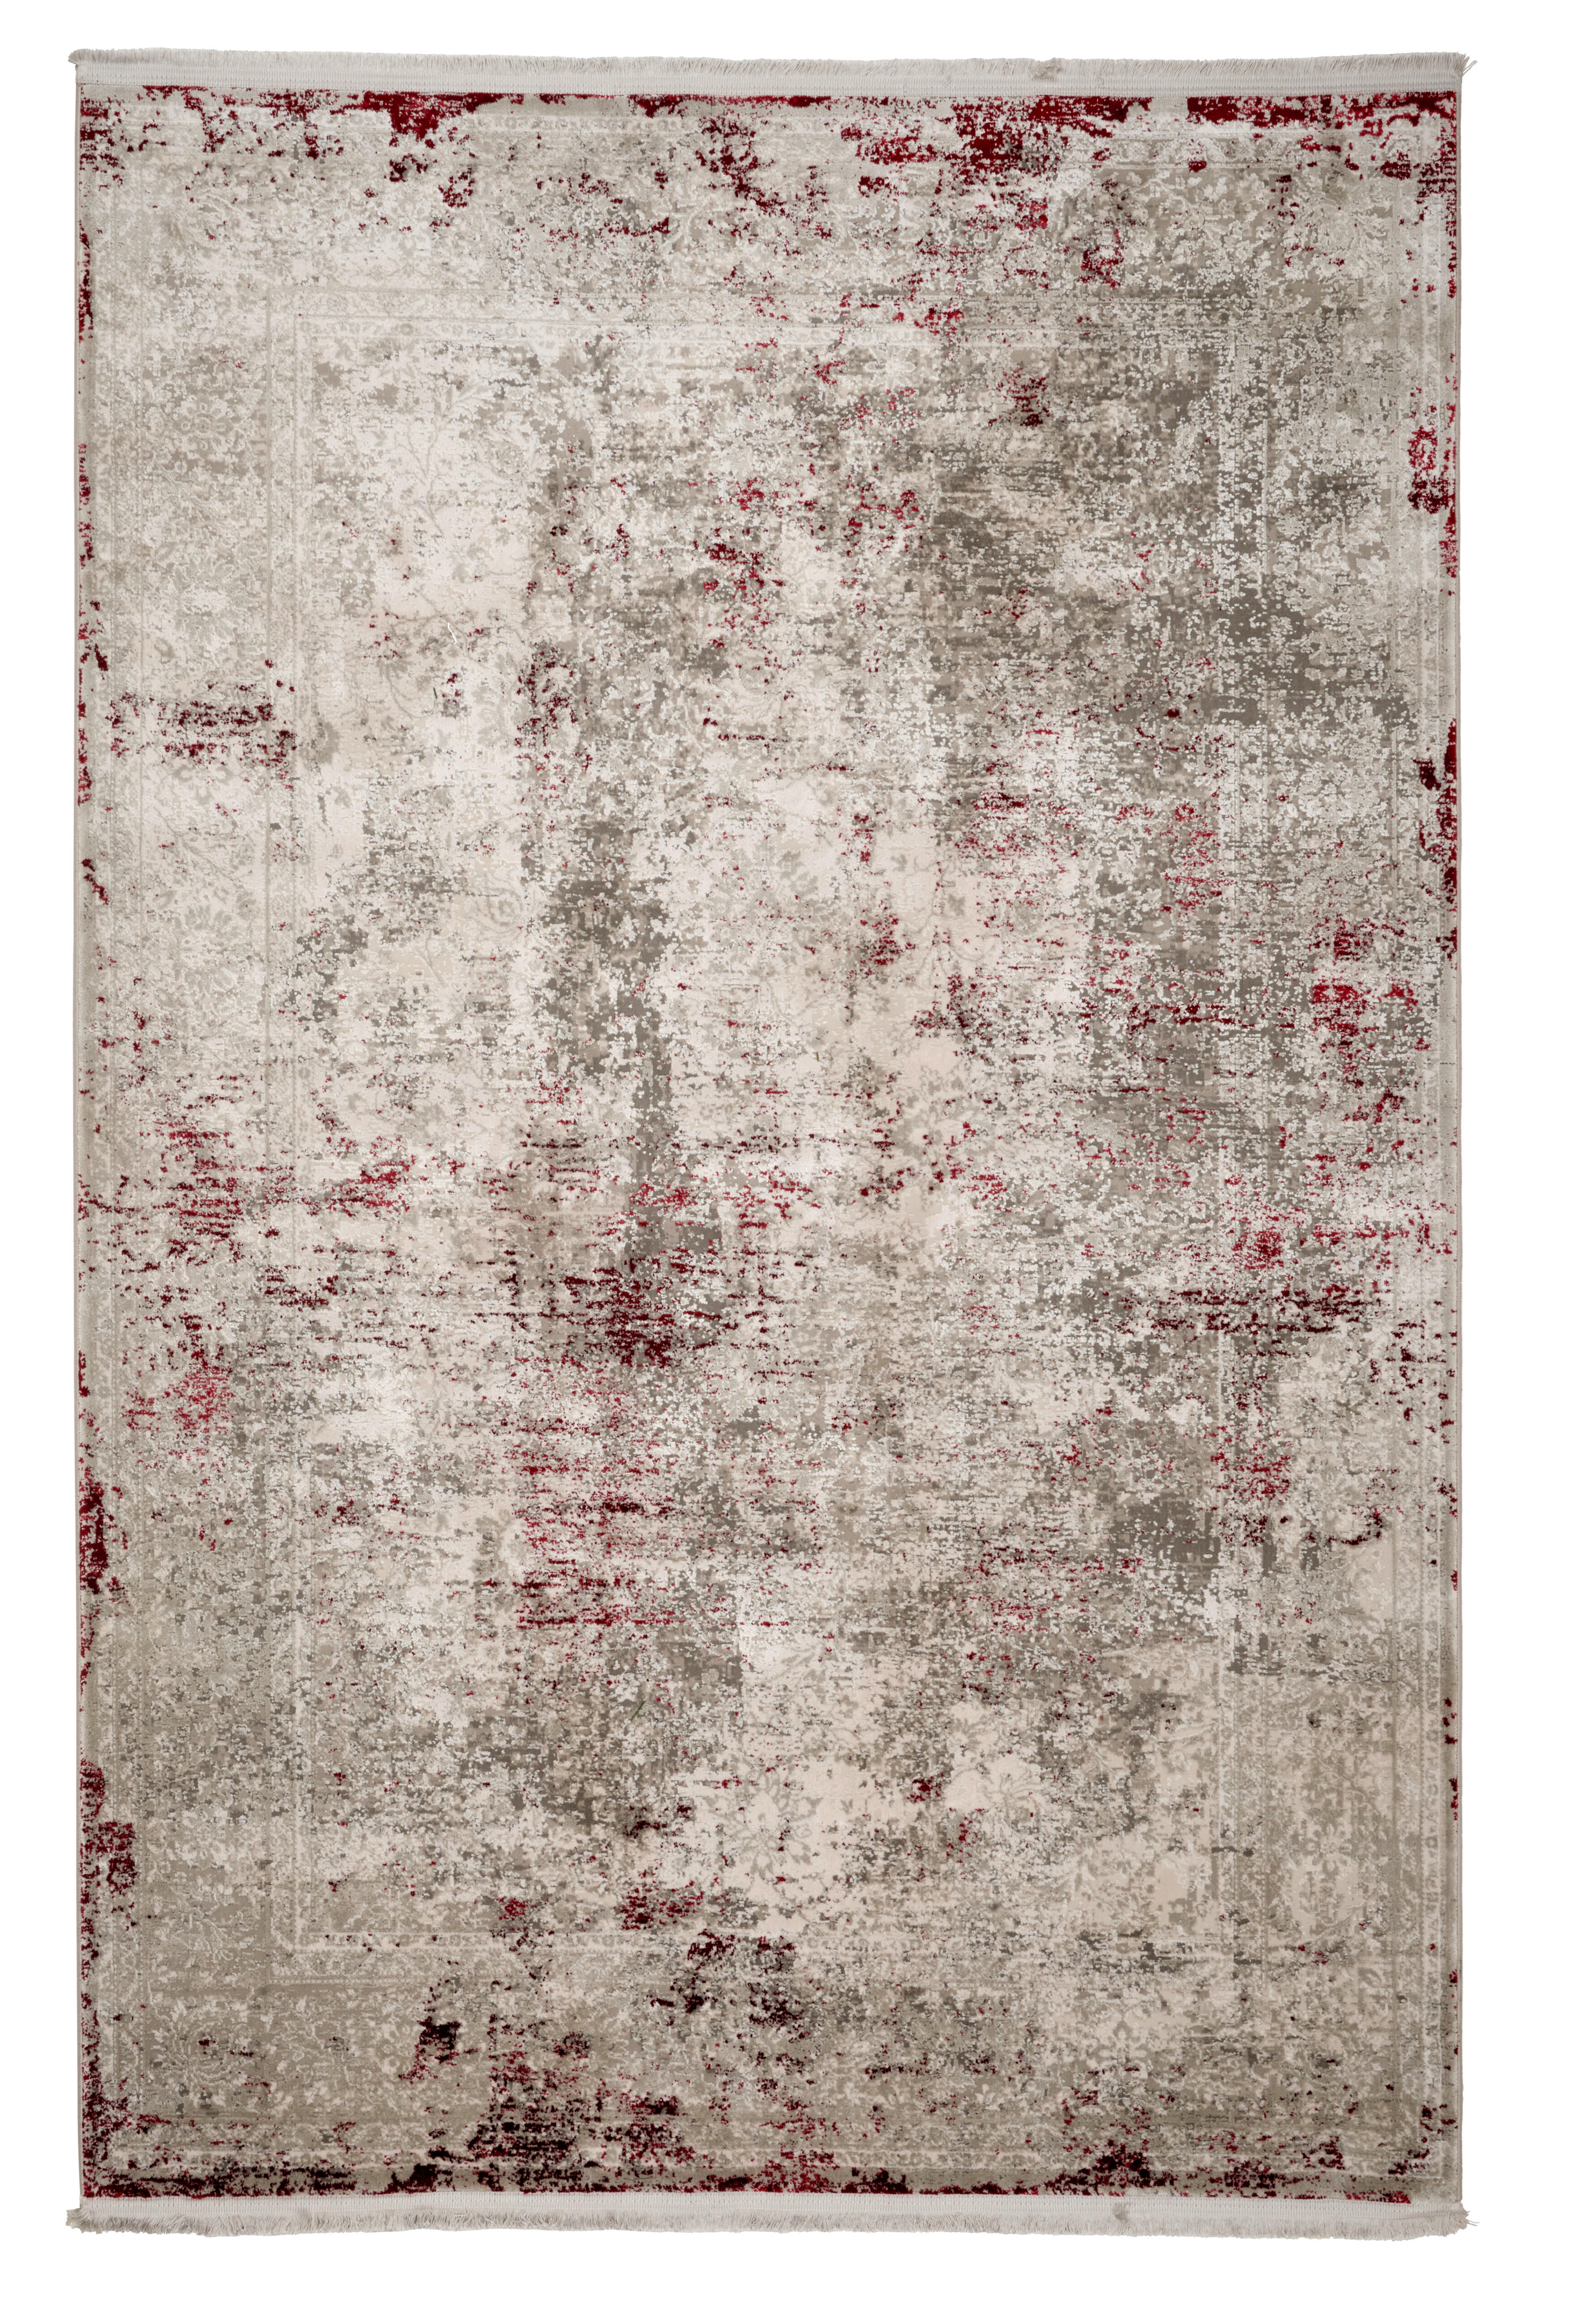 Dieter Knoll VINTAGE KOBEREC, 80/150 cm, červená - červená - textil, přírodní materiály